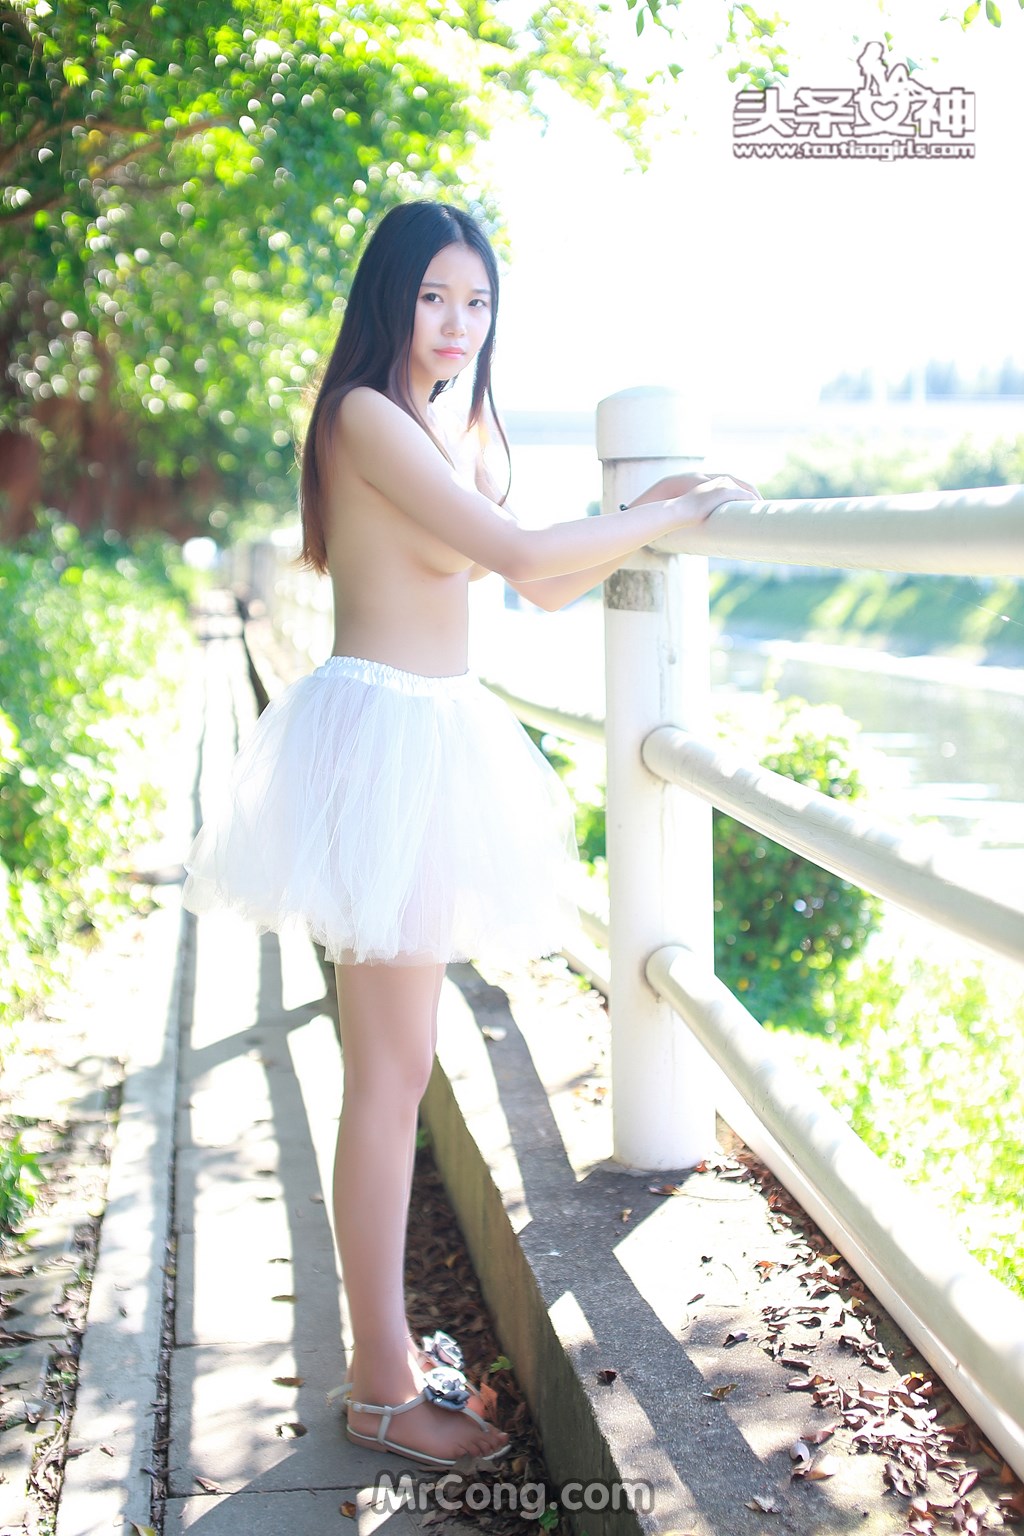 TouTiao 2016-08-03: Model Xiao Yu (小雨) (38 photos)